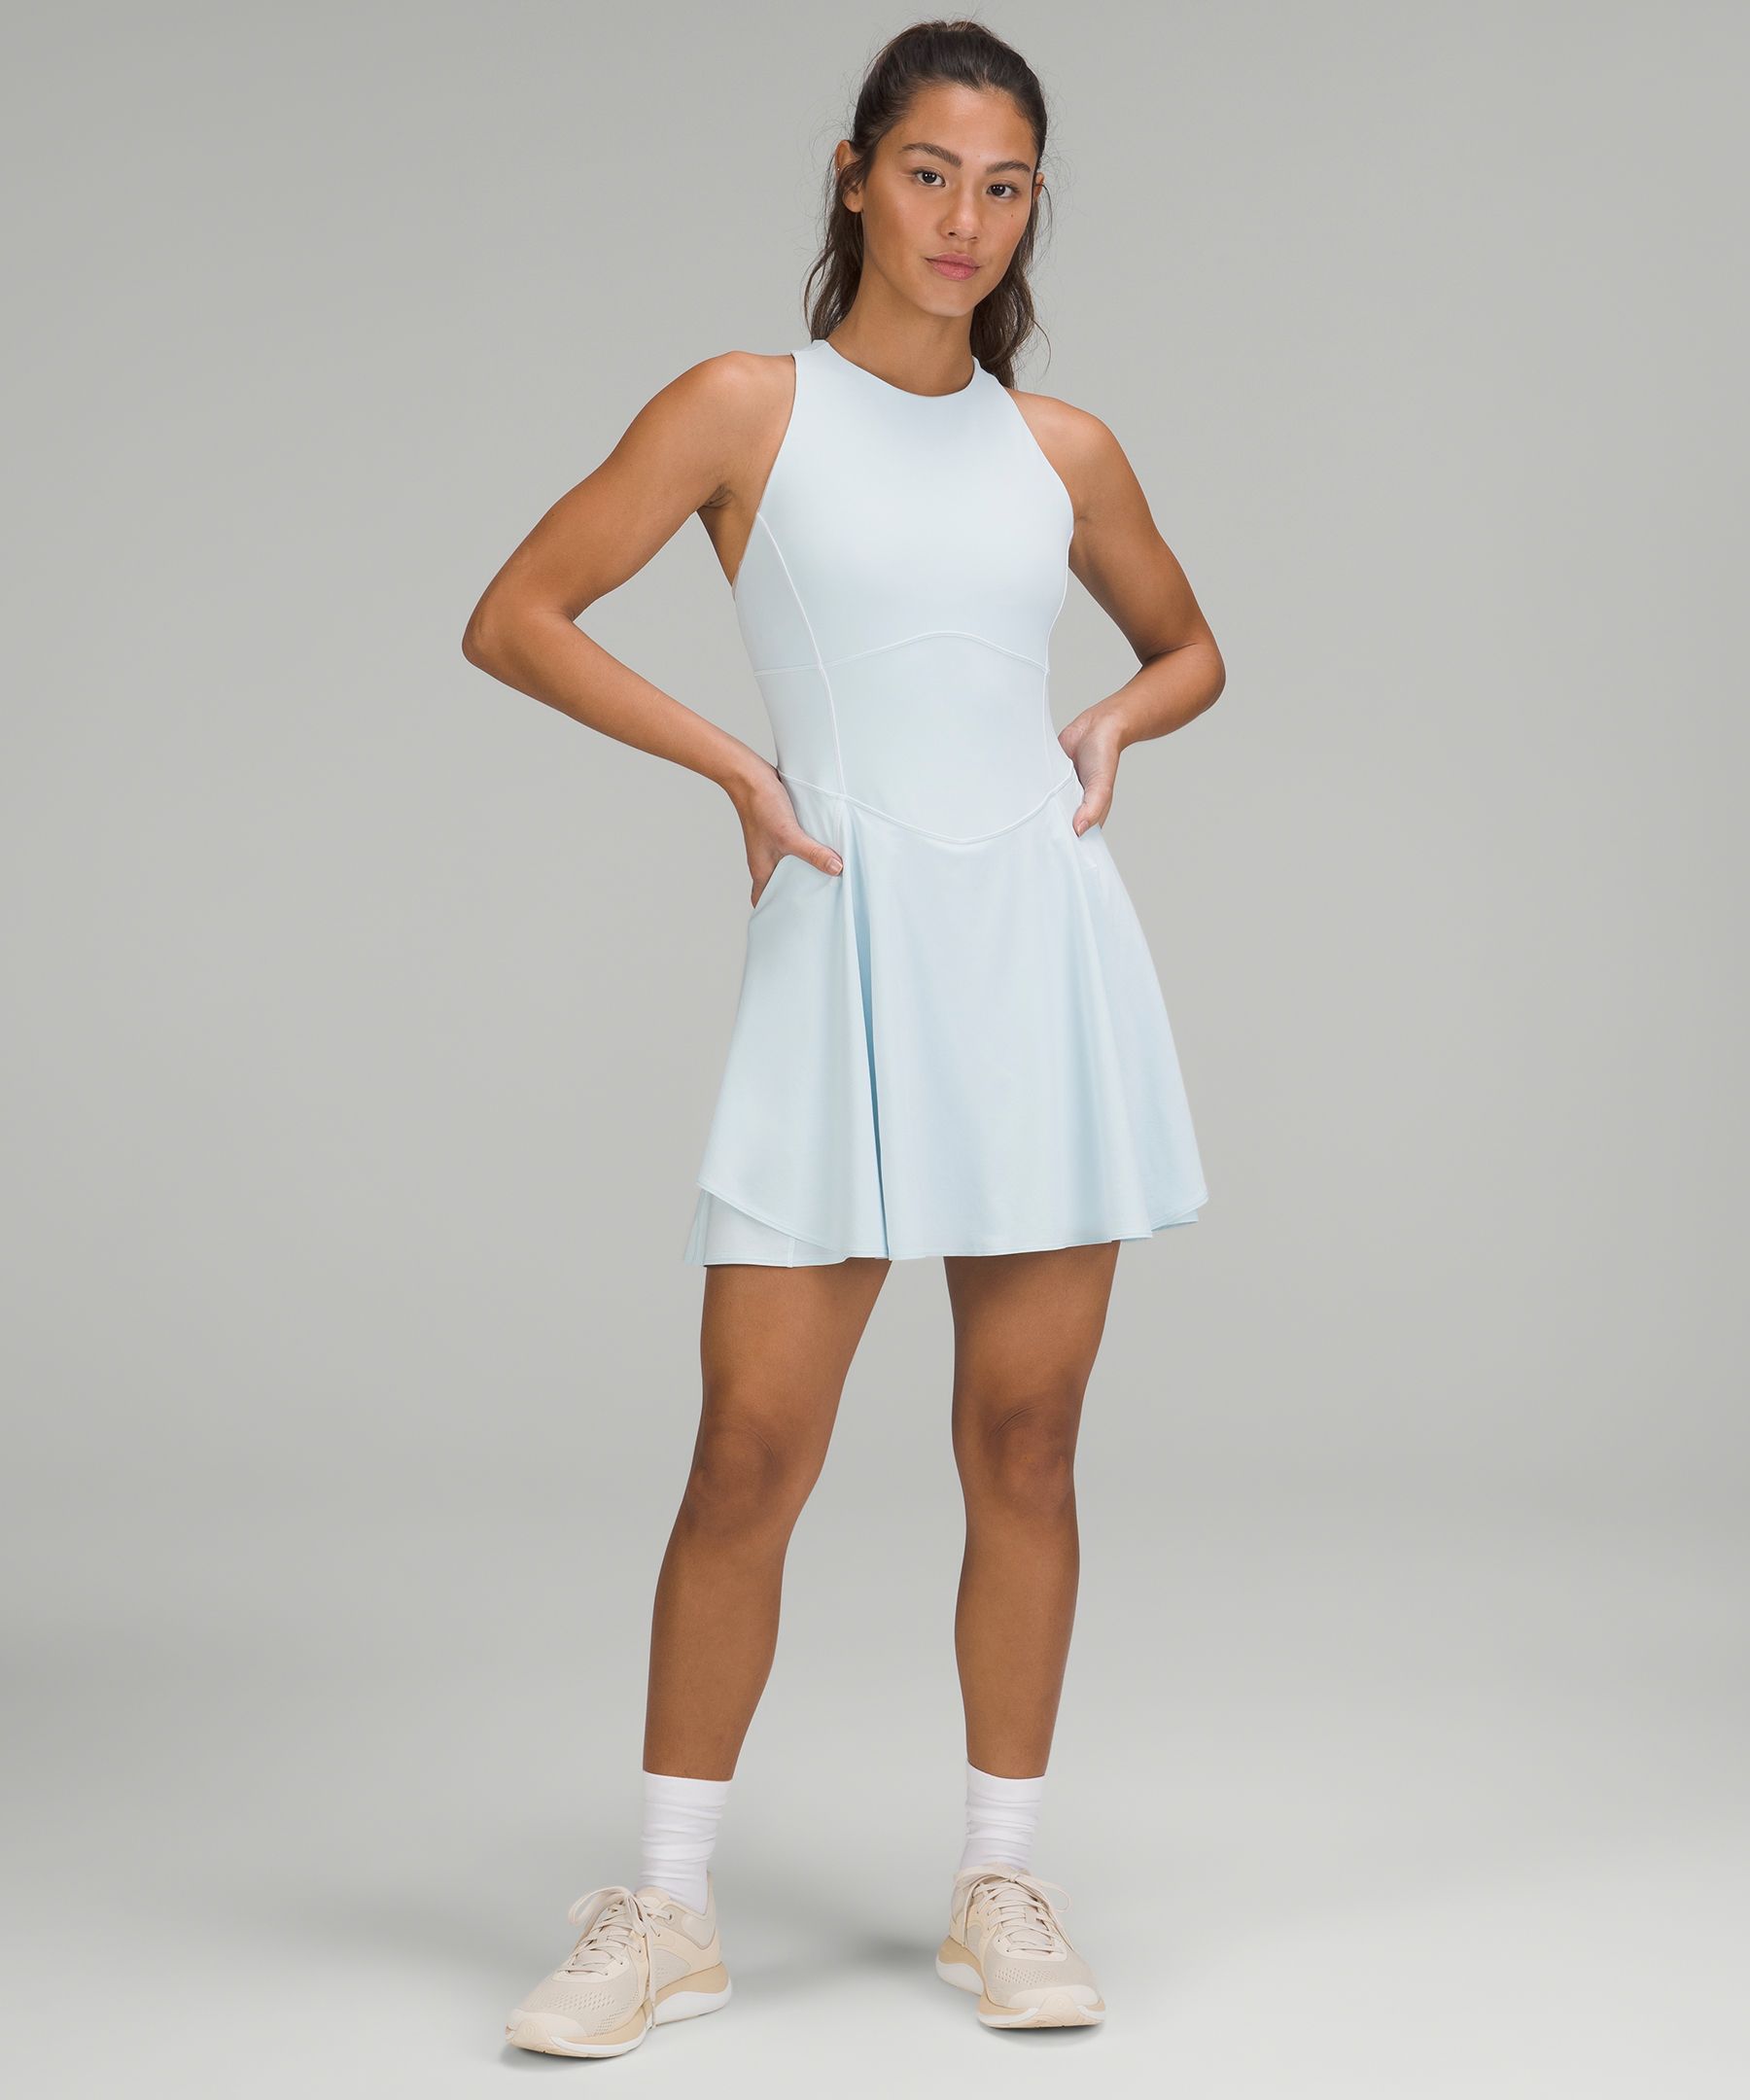 Court open-back stretch-jersey tennis dress